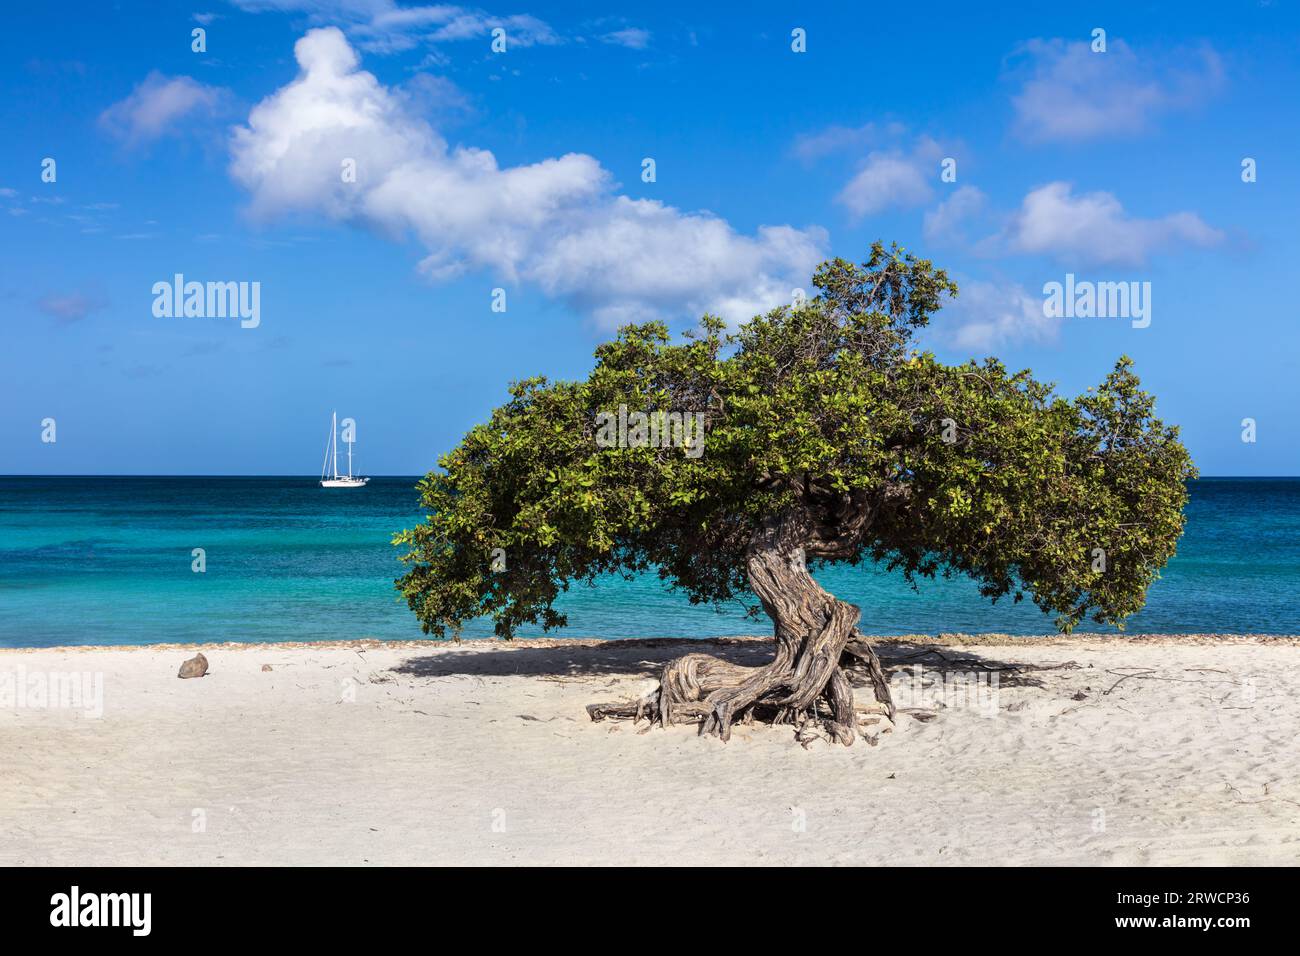 Célèbre arbre Fofoti (Conocarpus erectus) sur Eagle Beach à Aruba. Océan bleu vif et vert émeraude avec voilier en arrière-plan. Ciel nuageux bleu ci-dessus. Banque D'Images